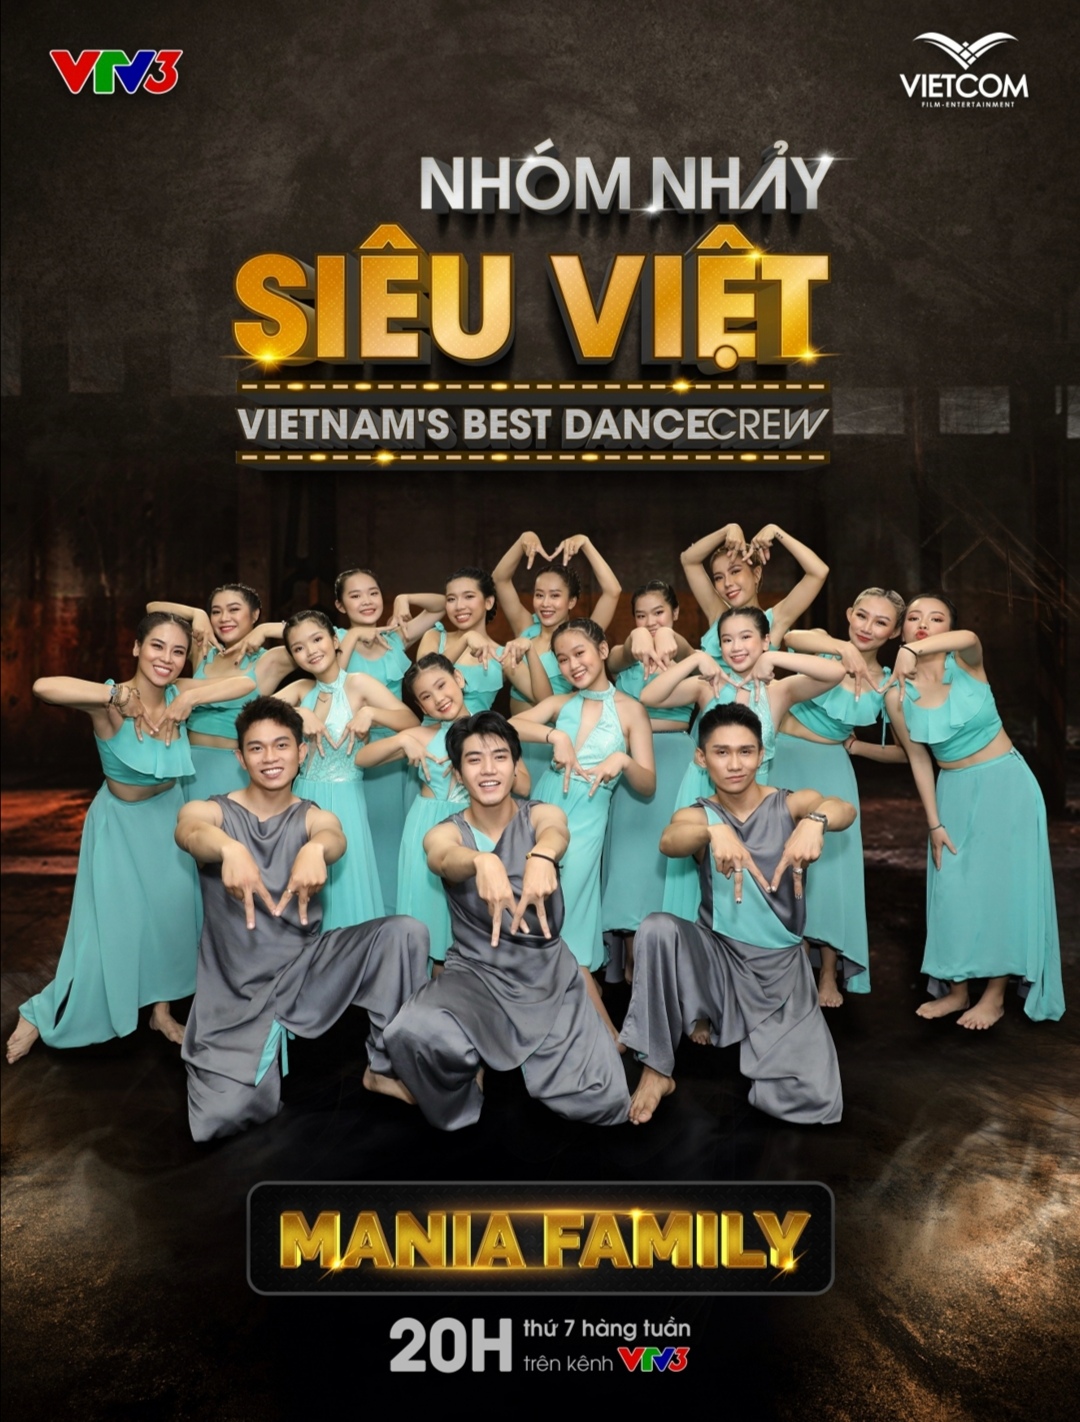 Screenshot 20210519 171958 Biên đạo Alex Tú mang nhóm nhảy đến với sân chơi Nhóm nhảy siêu Việt   Vietnam’s Best Dance Crew